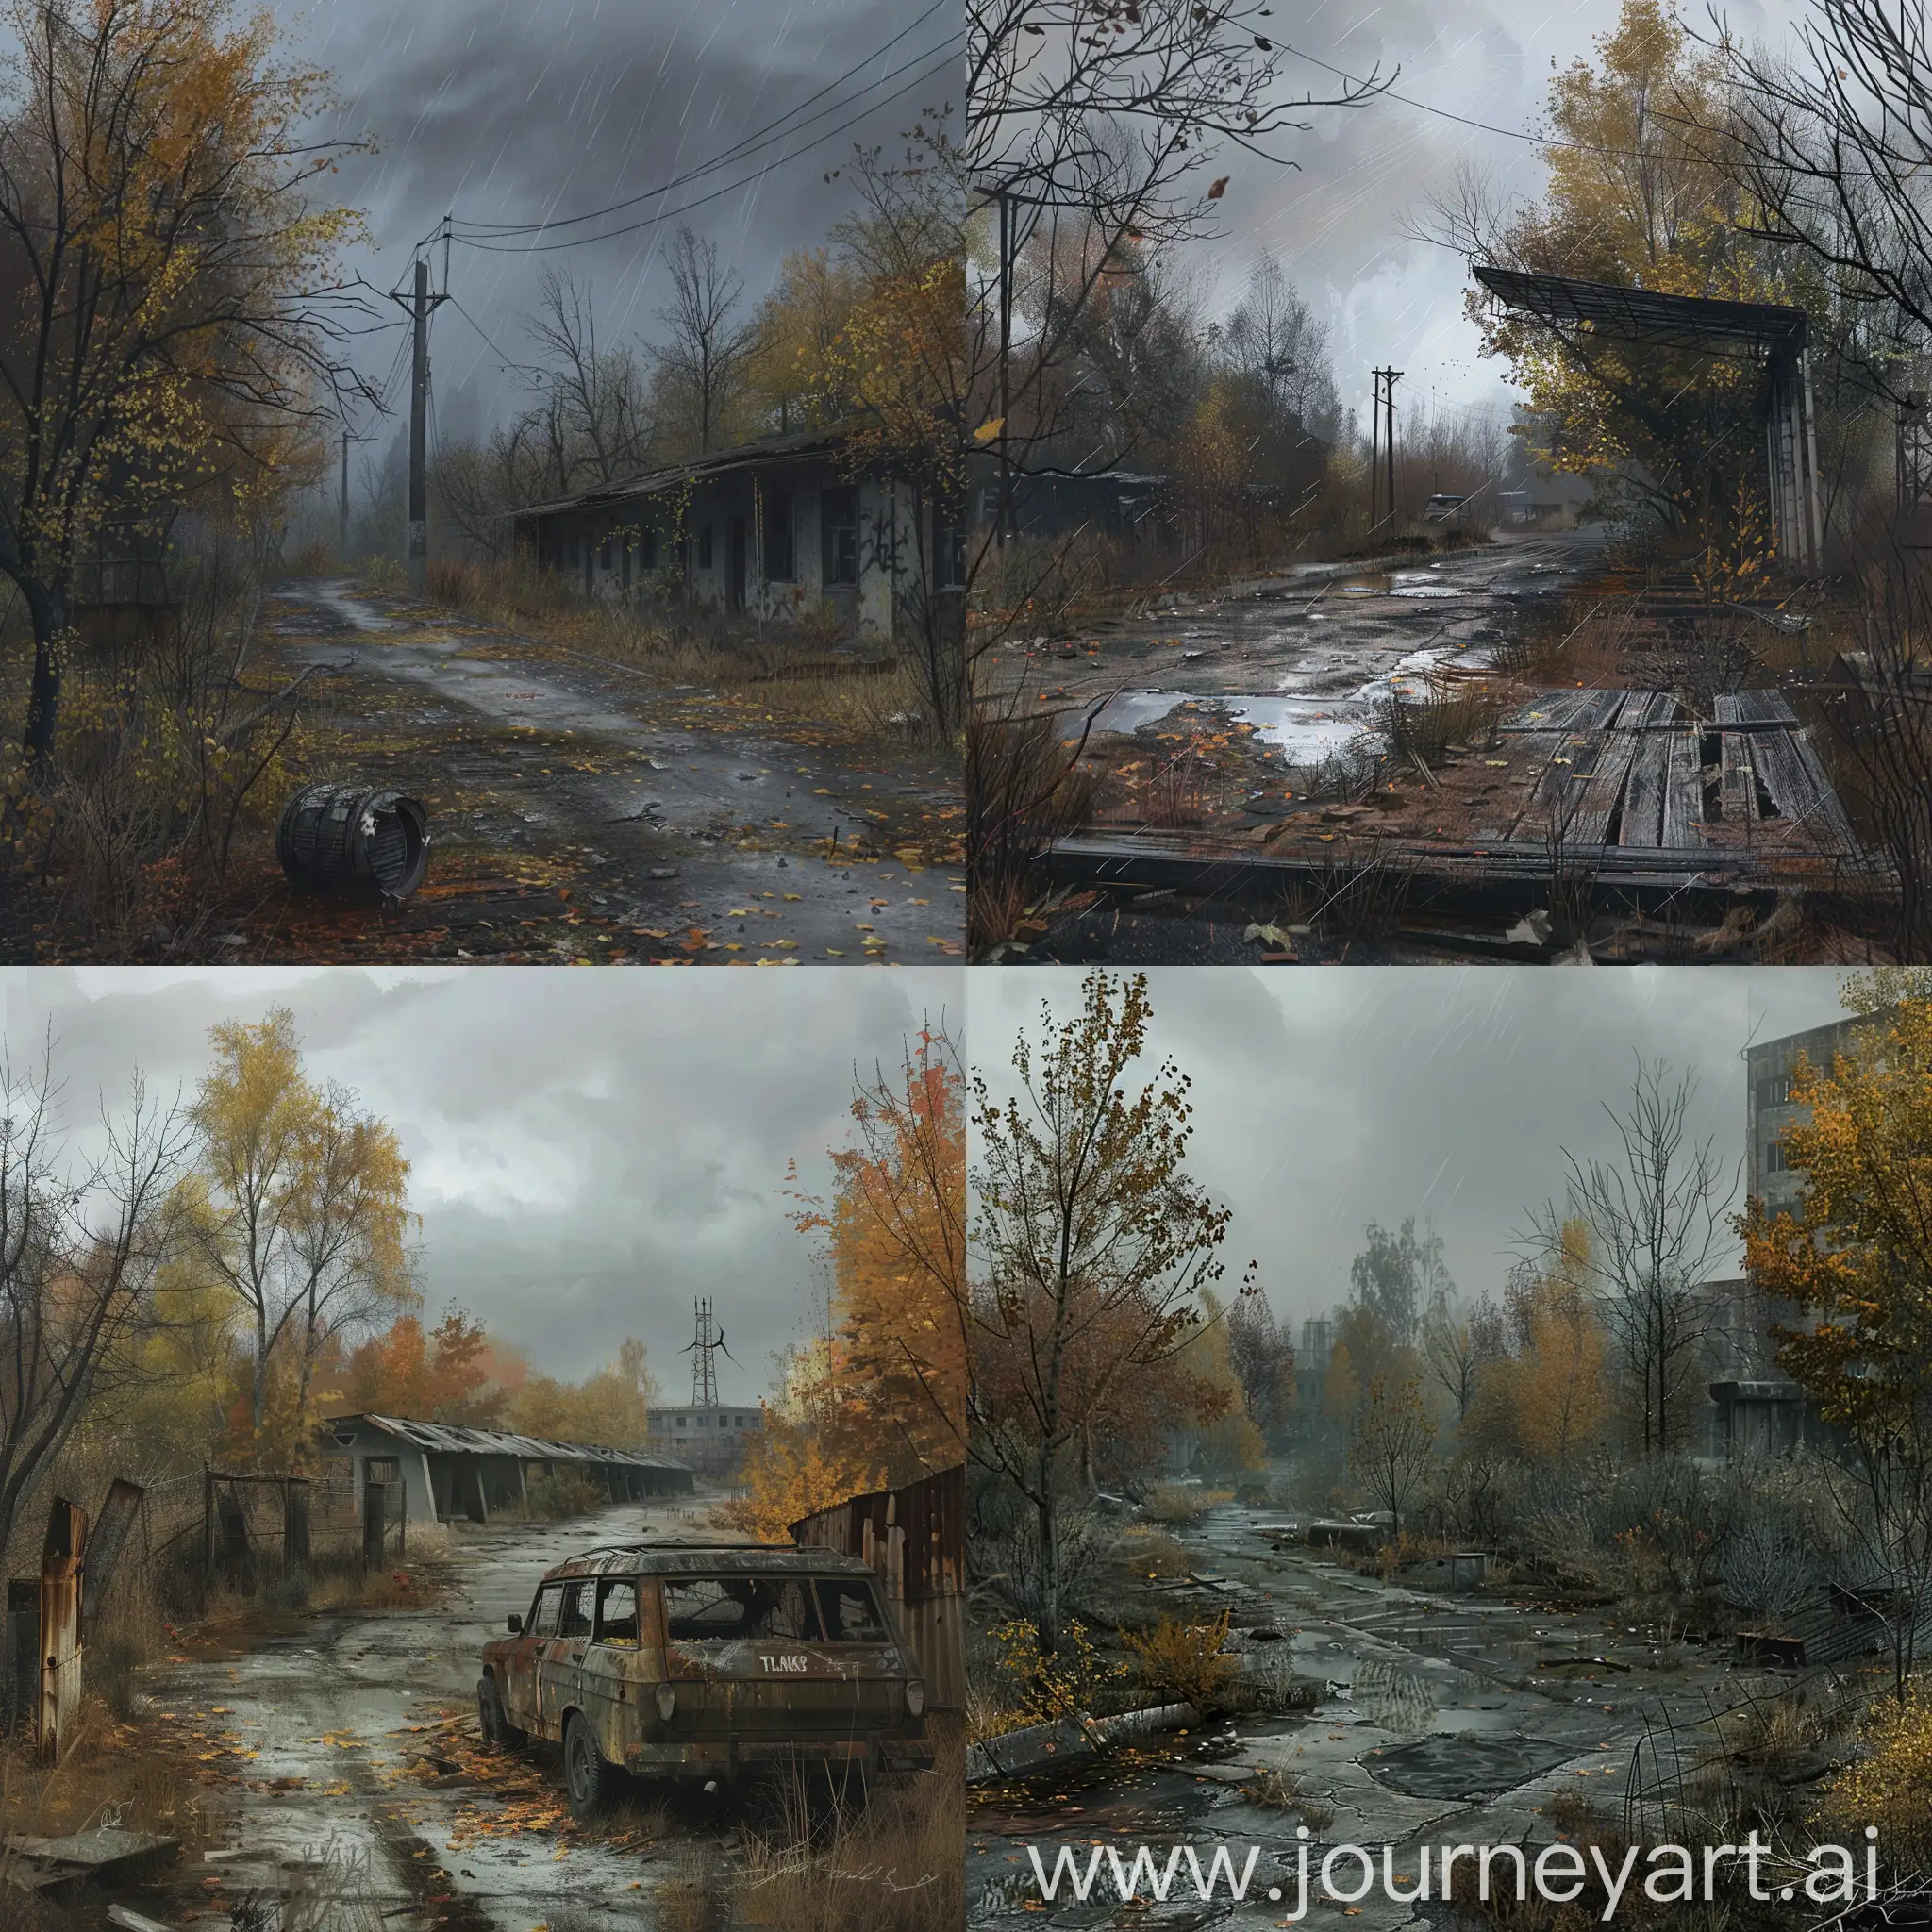 Gloomy-Autumn-Scene-in-STALKER-Universe-Concept-Art-for-RPG-Game